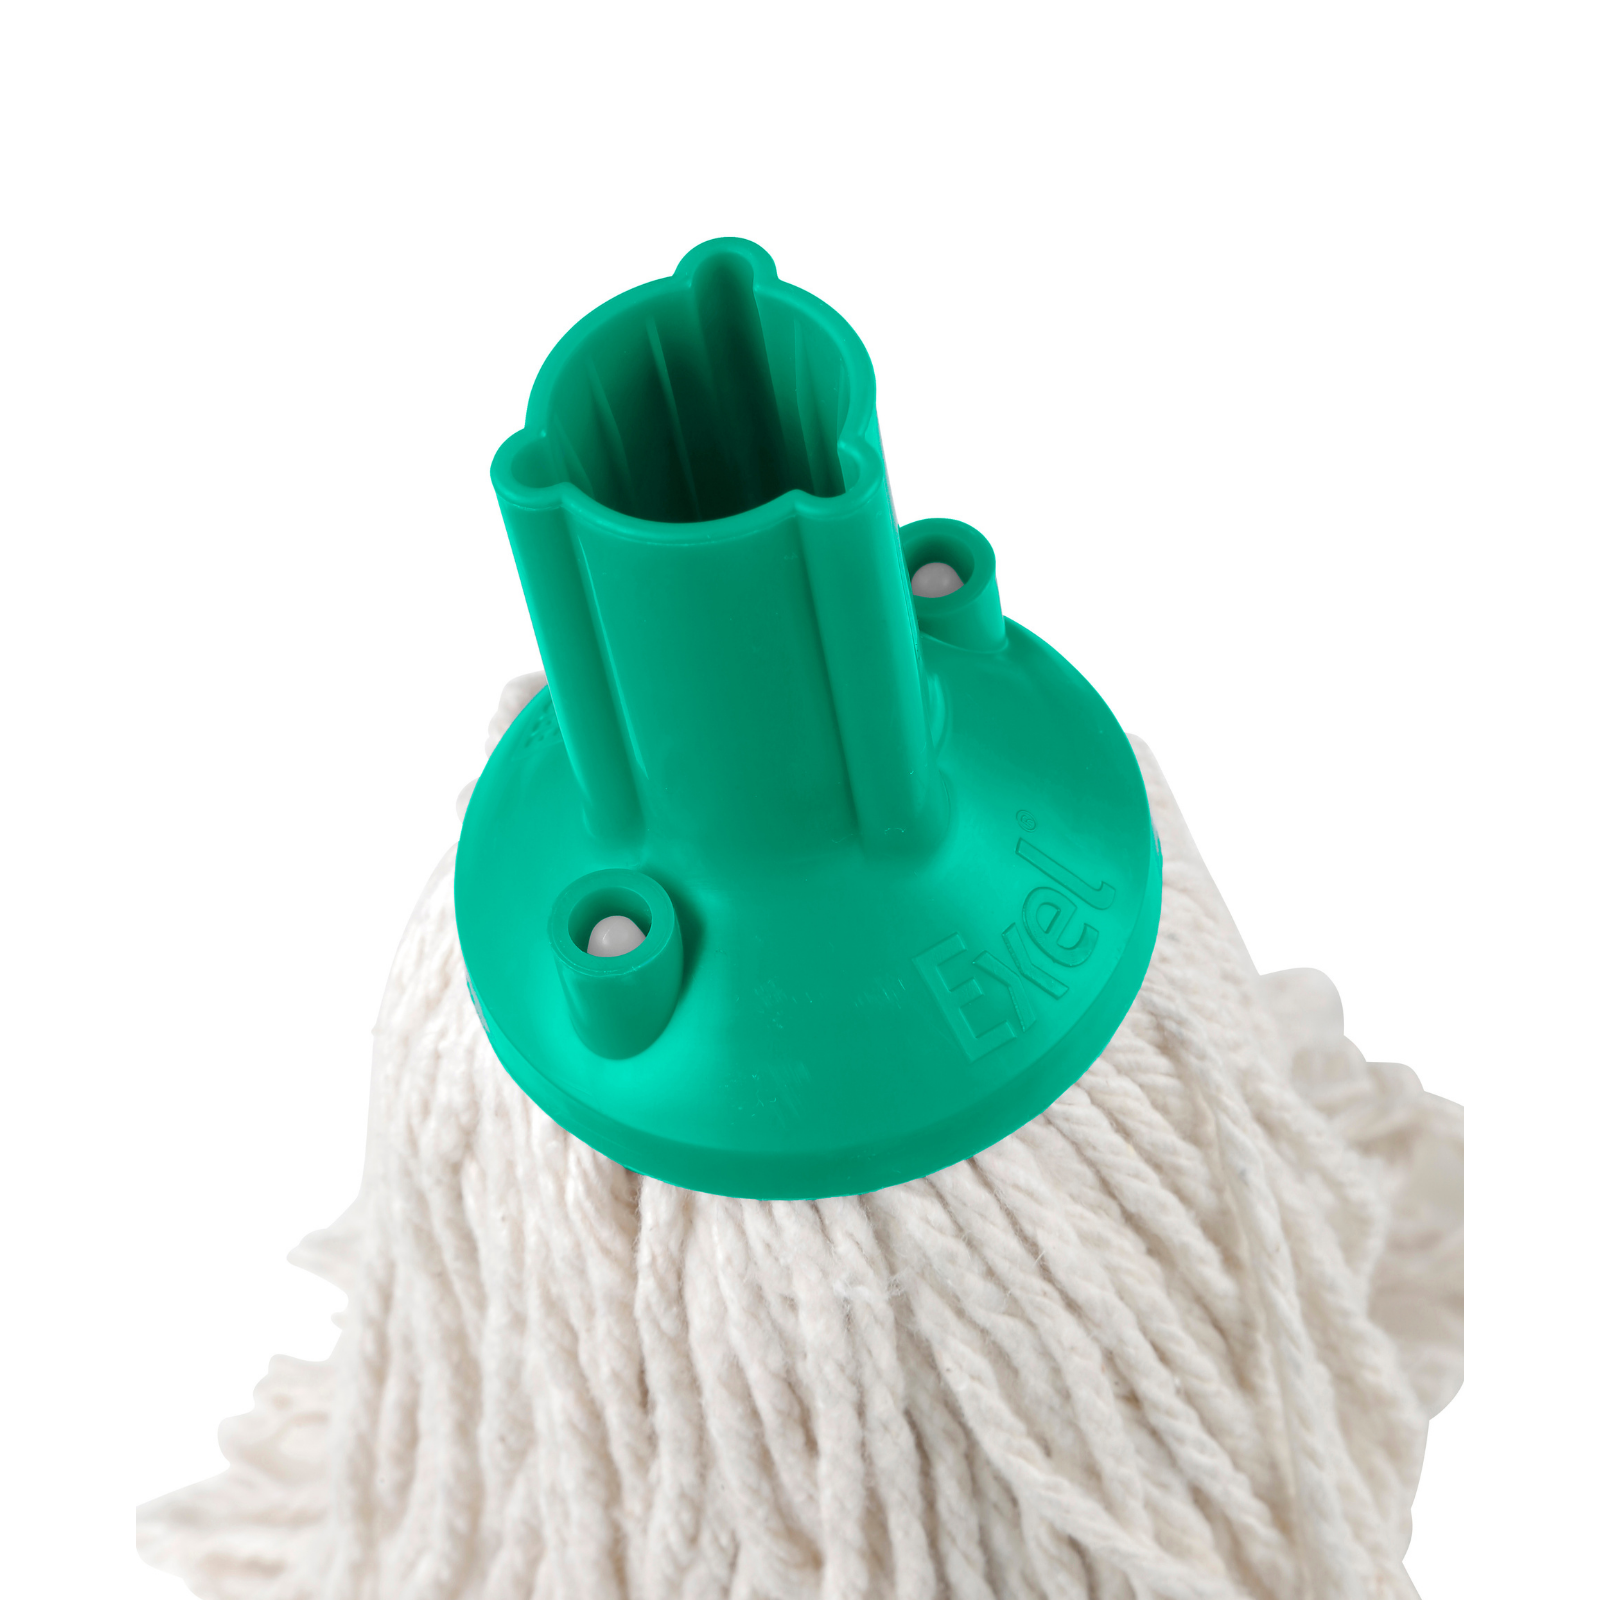 Exel 200g PY Yarn Socket Mops - Green